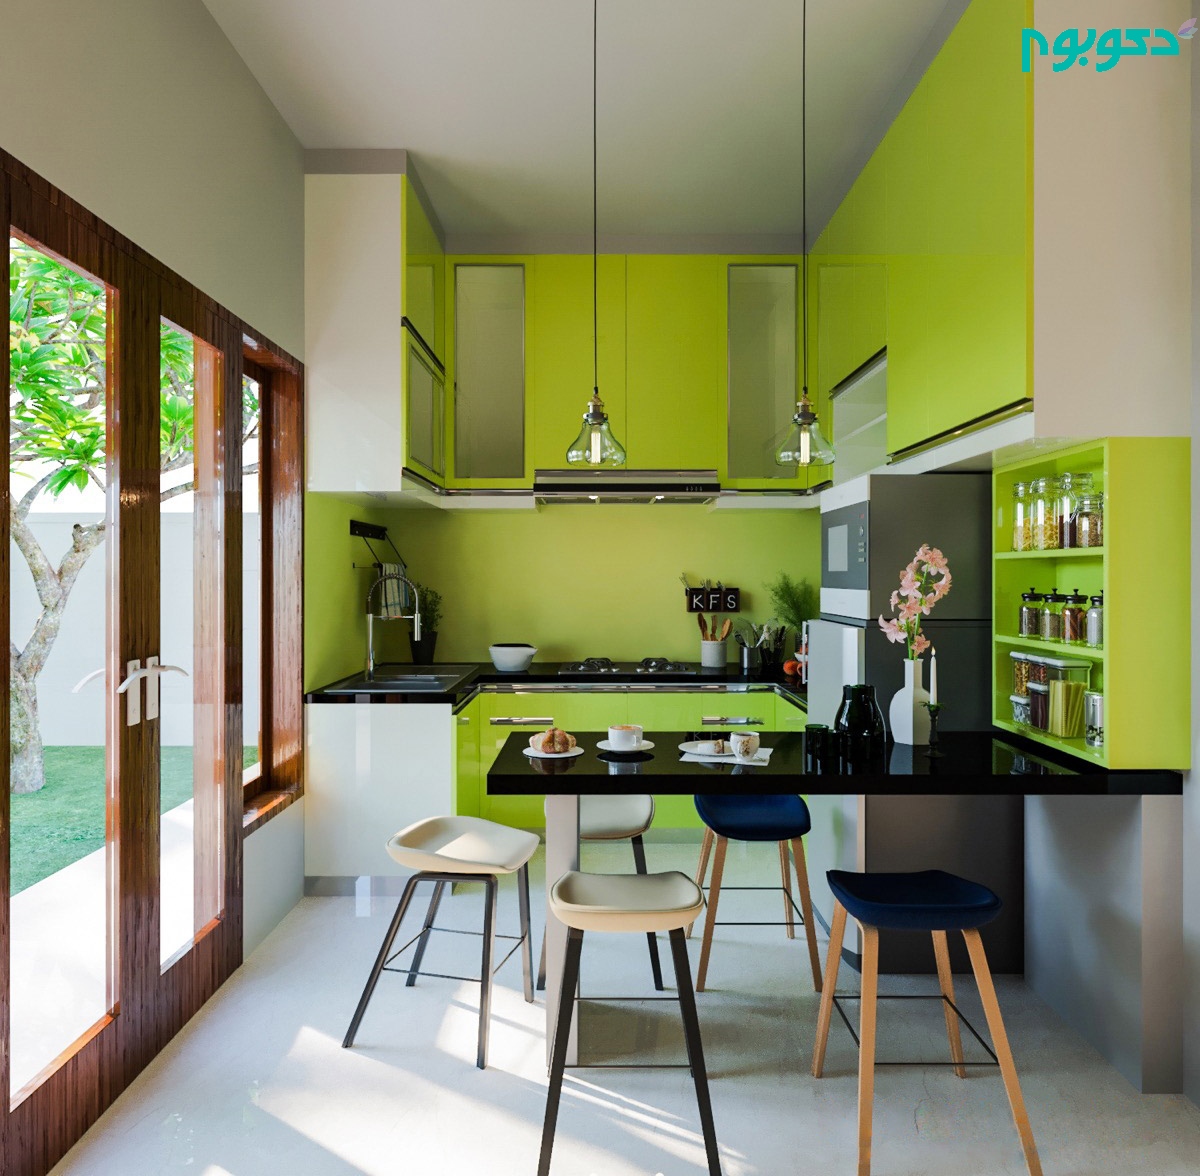 دکوراسیون داخلی آشپزخانه سبز و مشکی